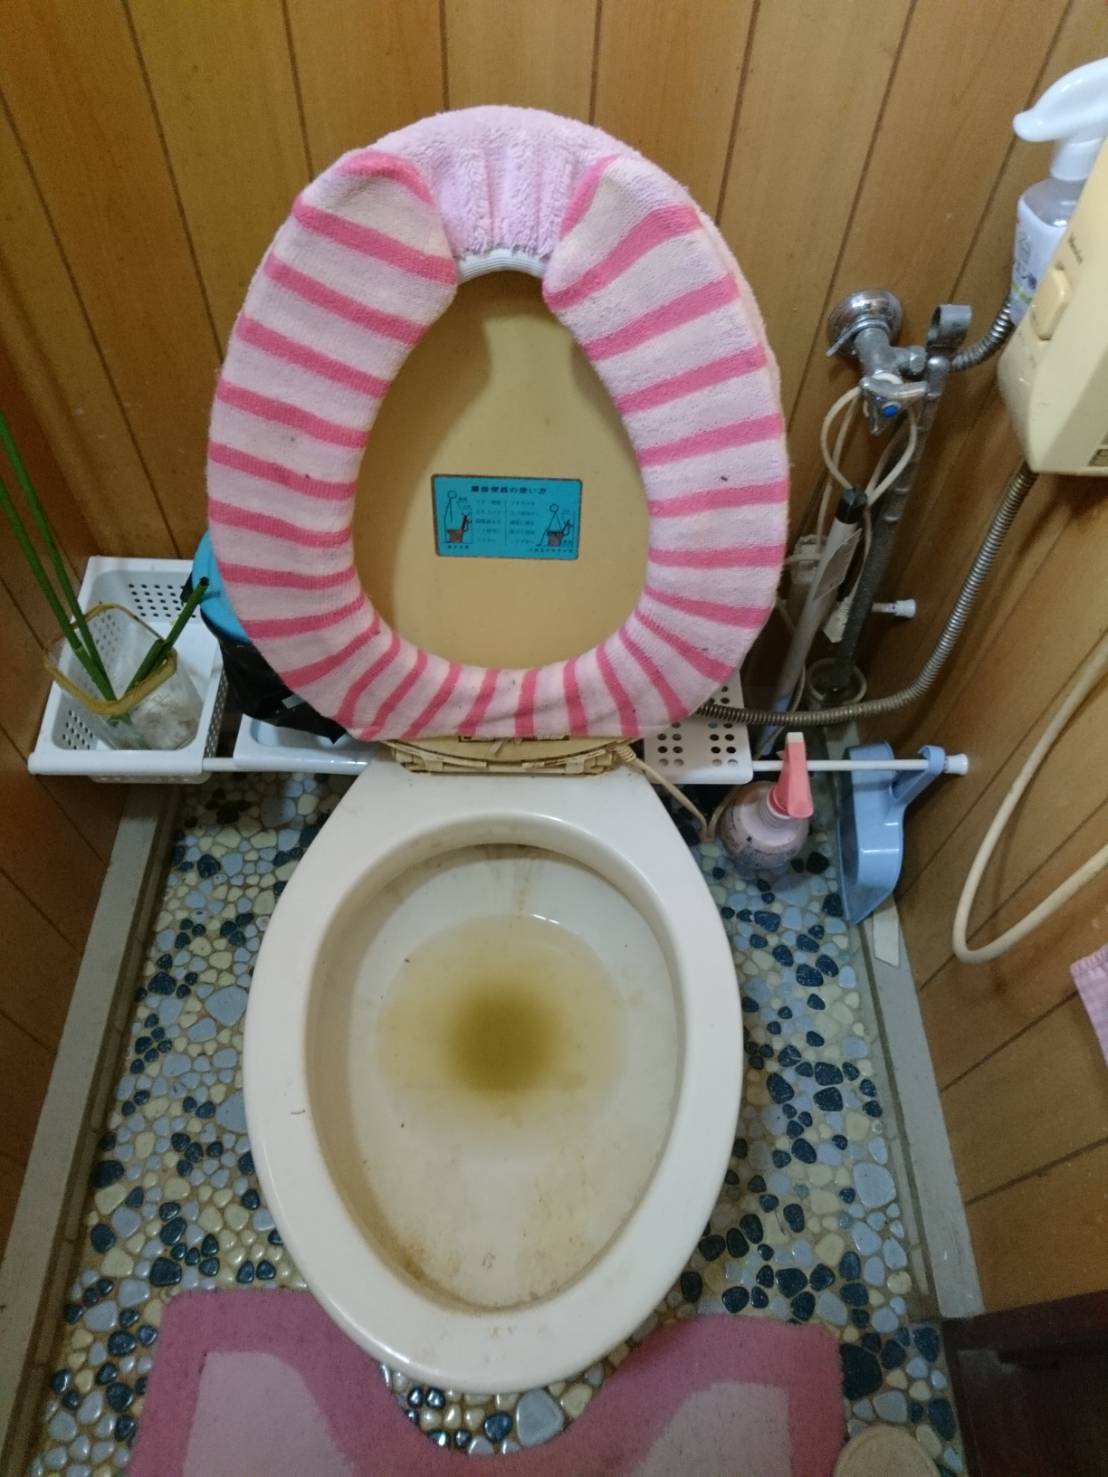 【神奈川県茅ケ崎市小和田】簡易水栓トイレが詰まった。排水管高圧洗浄ですっきり。 排水管の高圧洗浄なら【通管